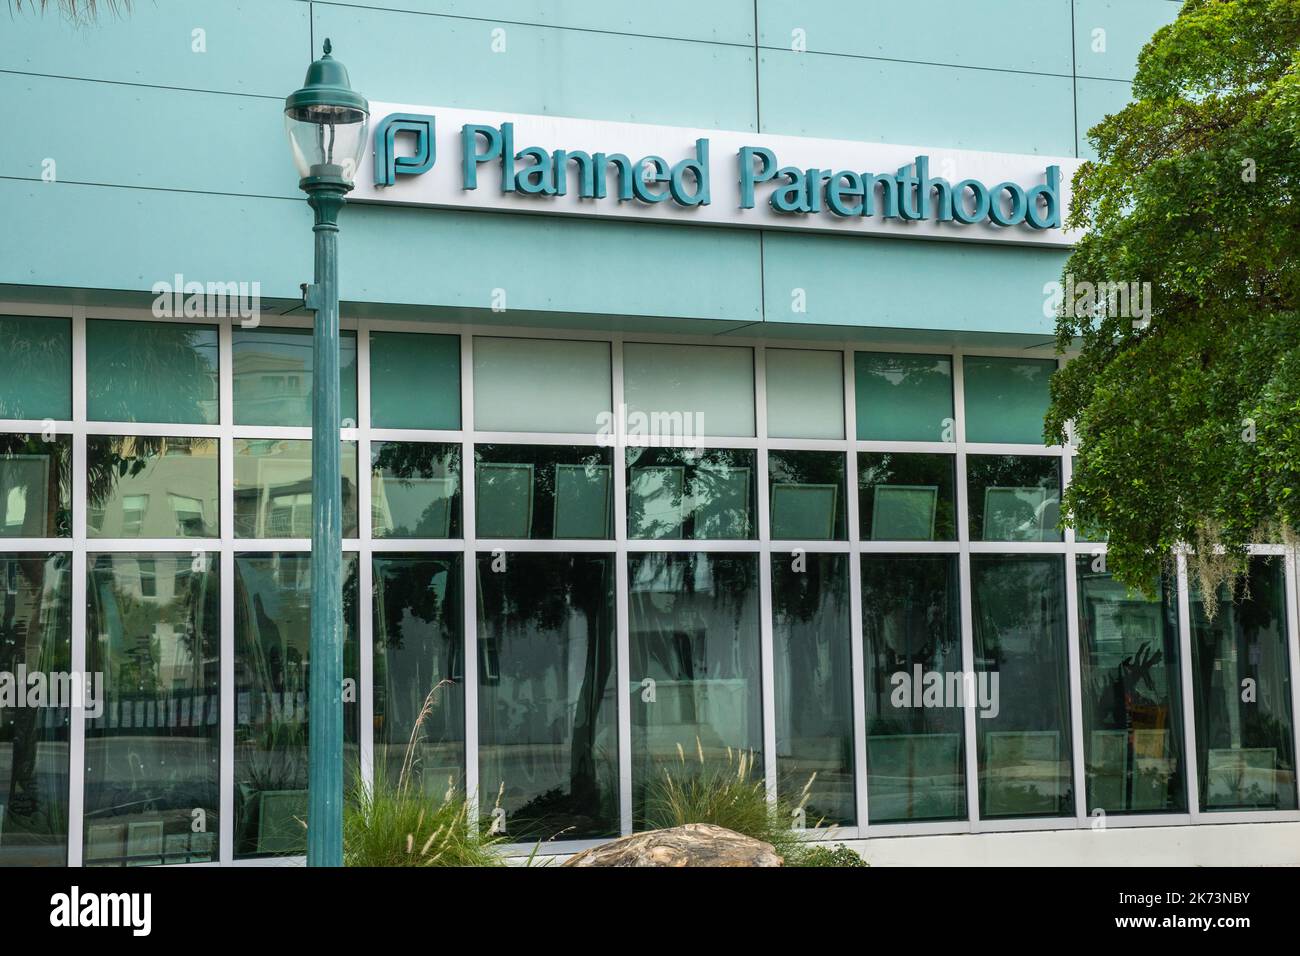 25. September 2022: Vor der geplanten Parenthood Clinic, einer Non-Profit-Organisation, die reproduktive Gesundheitsdienste anbietet. Stockfoto